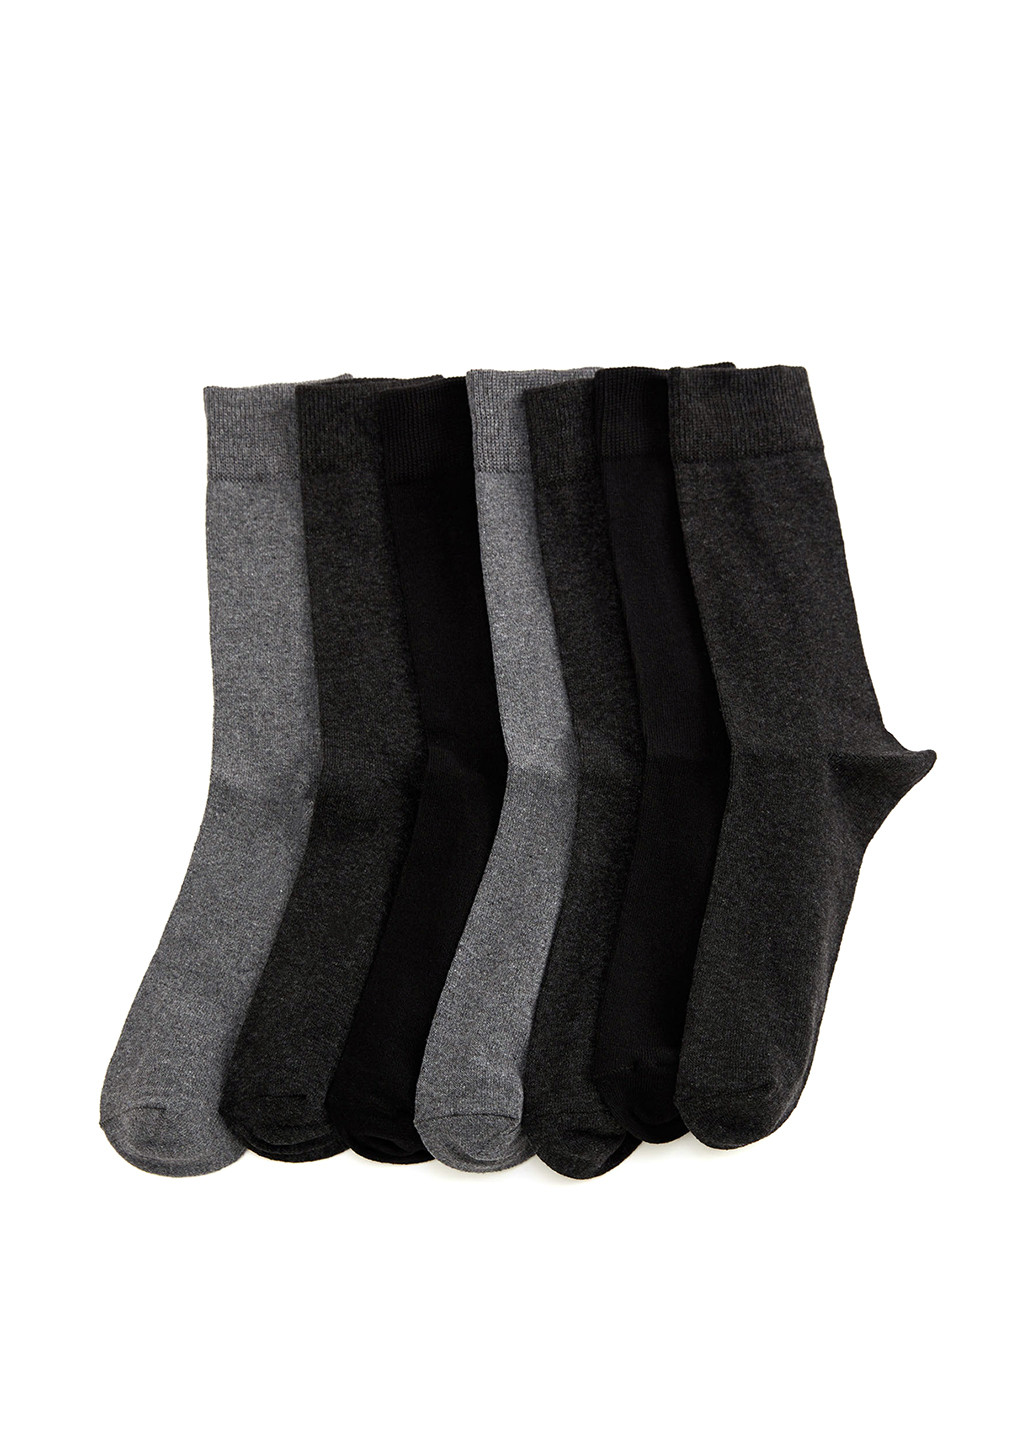 Носки(7шт) DeFacto без уплотненного носка комбинированные повседневные